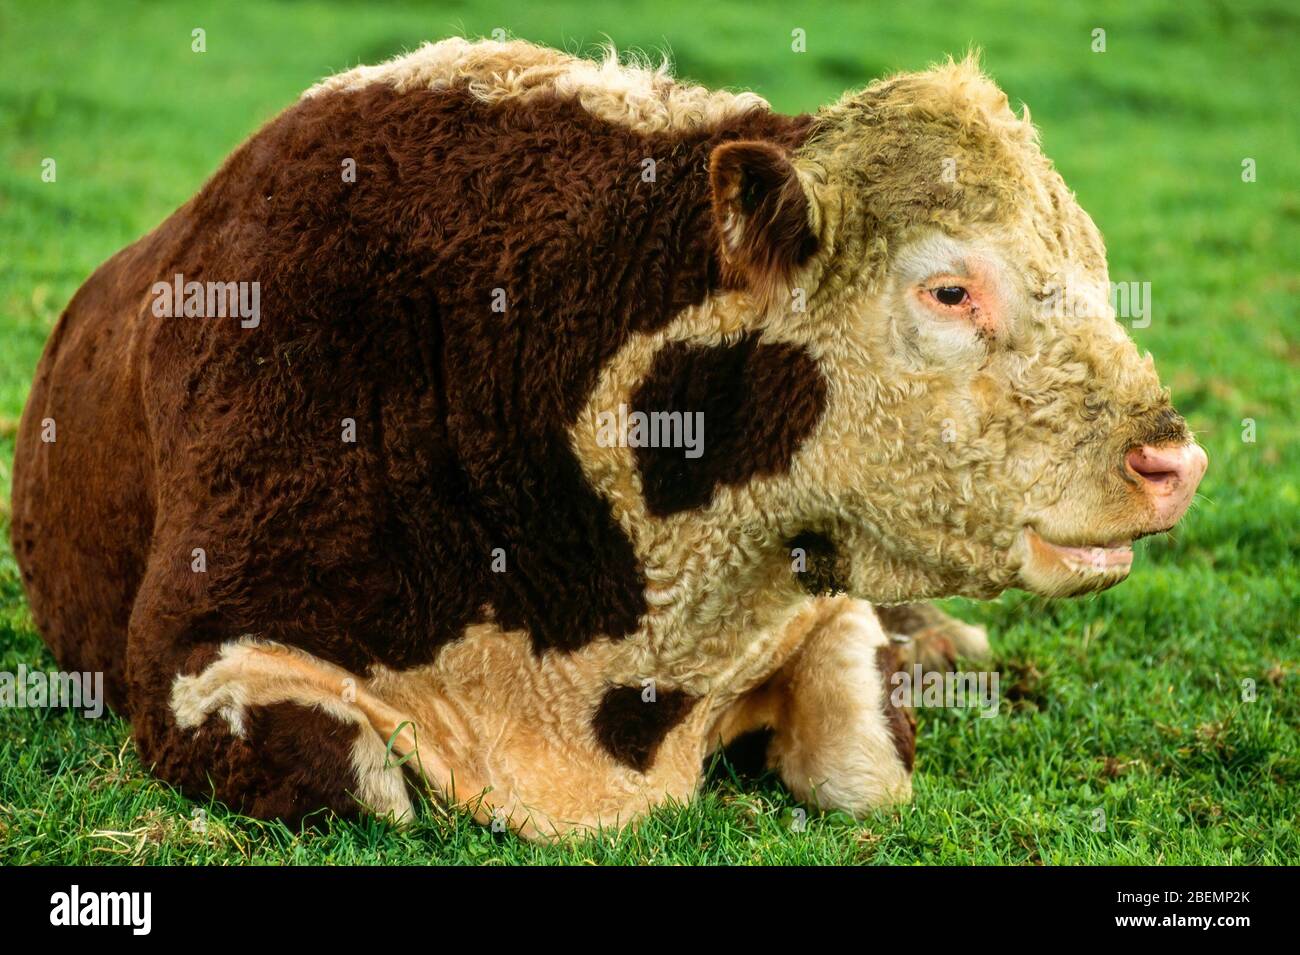 Nahaufnahme eines großen braunen und weißen Hereford Bull, der sich im grünen Gras, England, Großbritannien, niederlegt Stockfoto